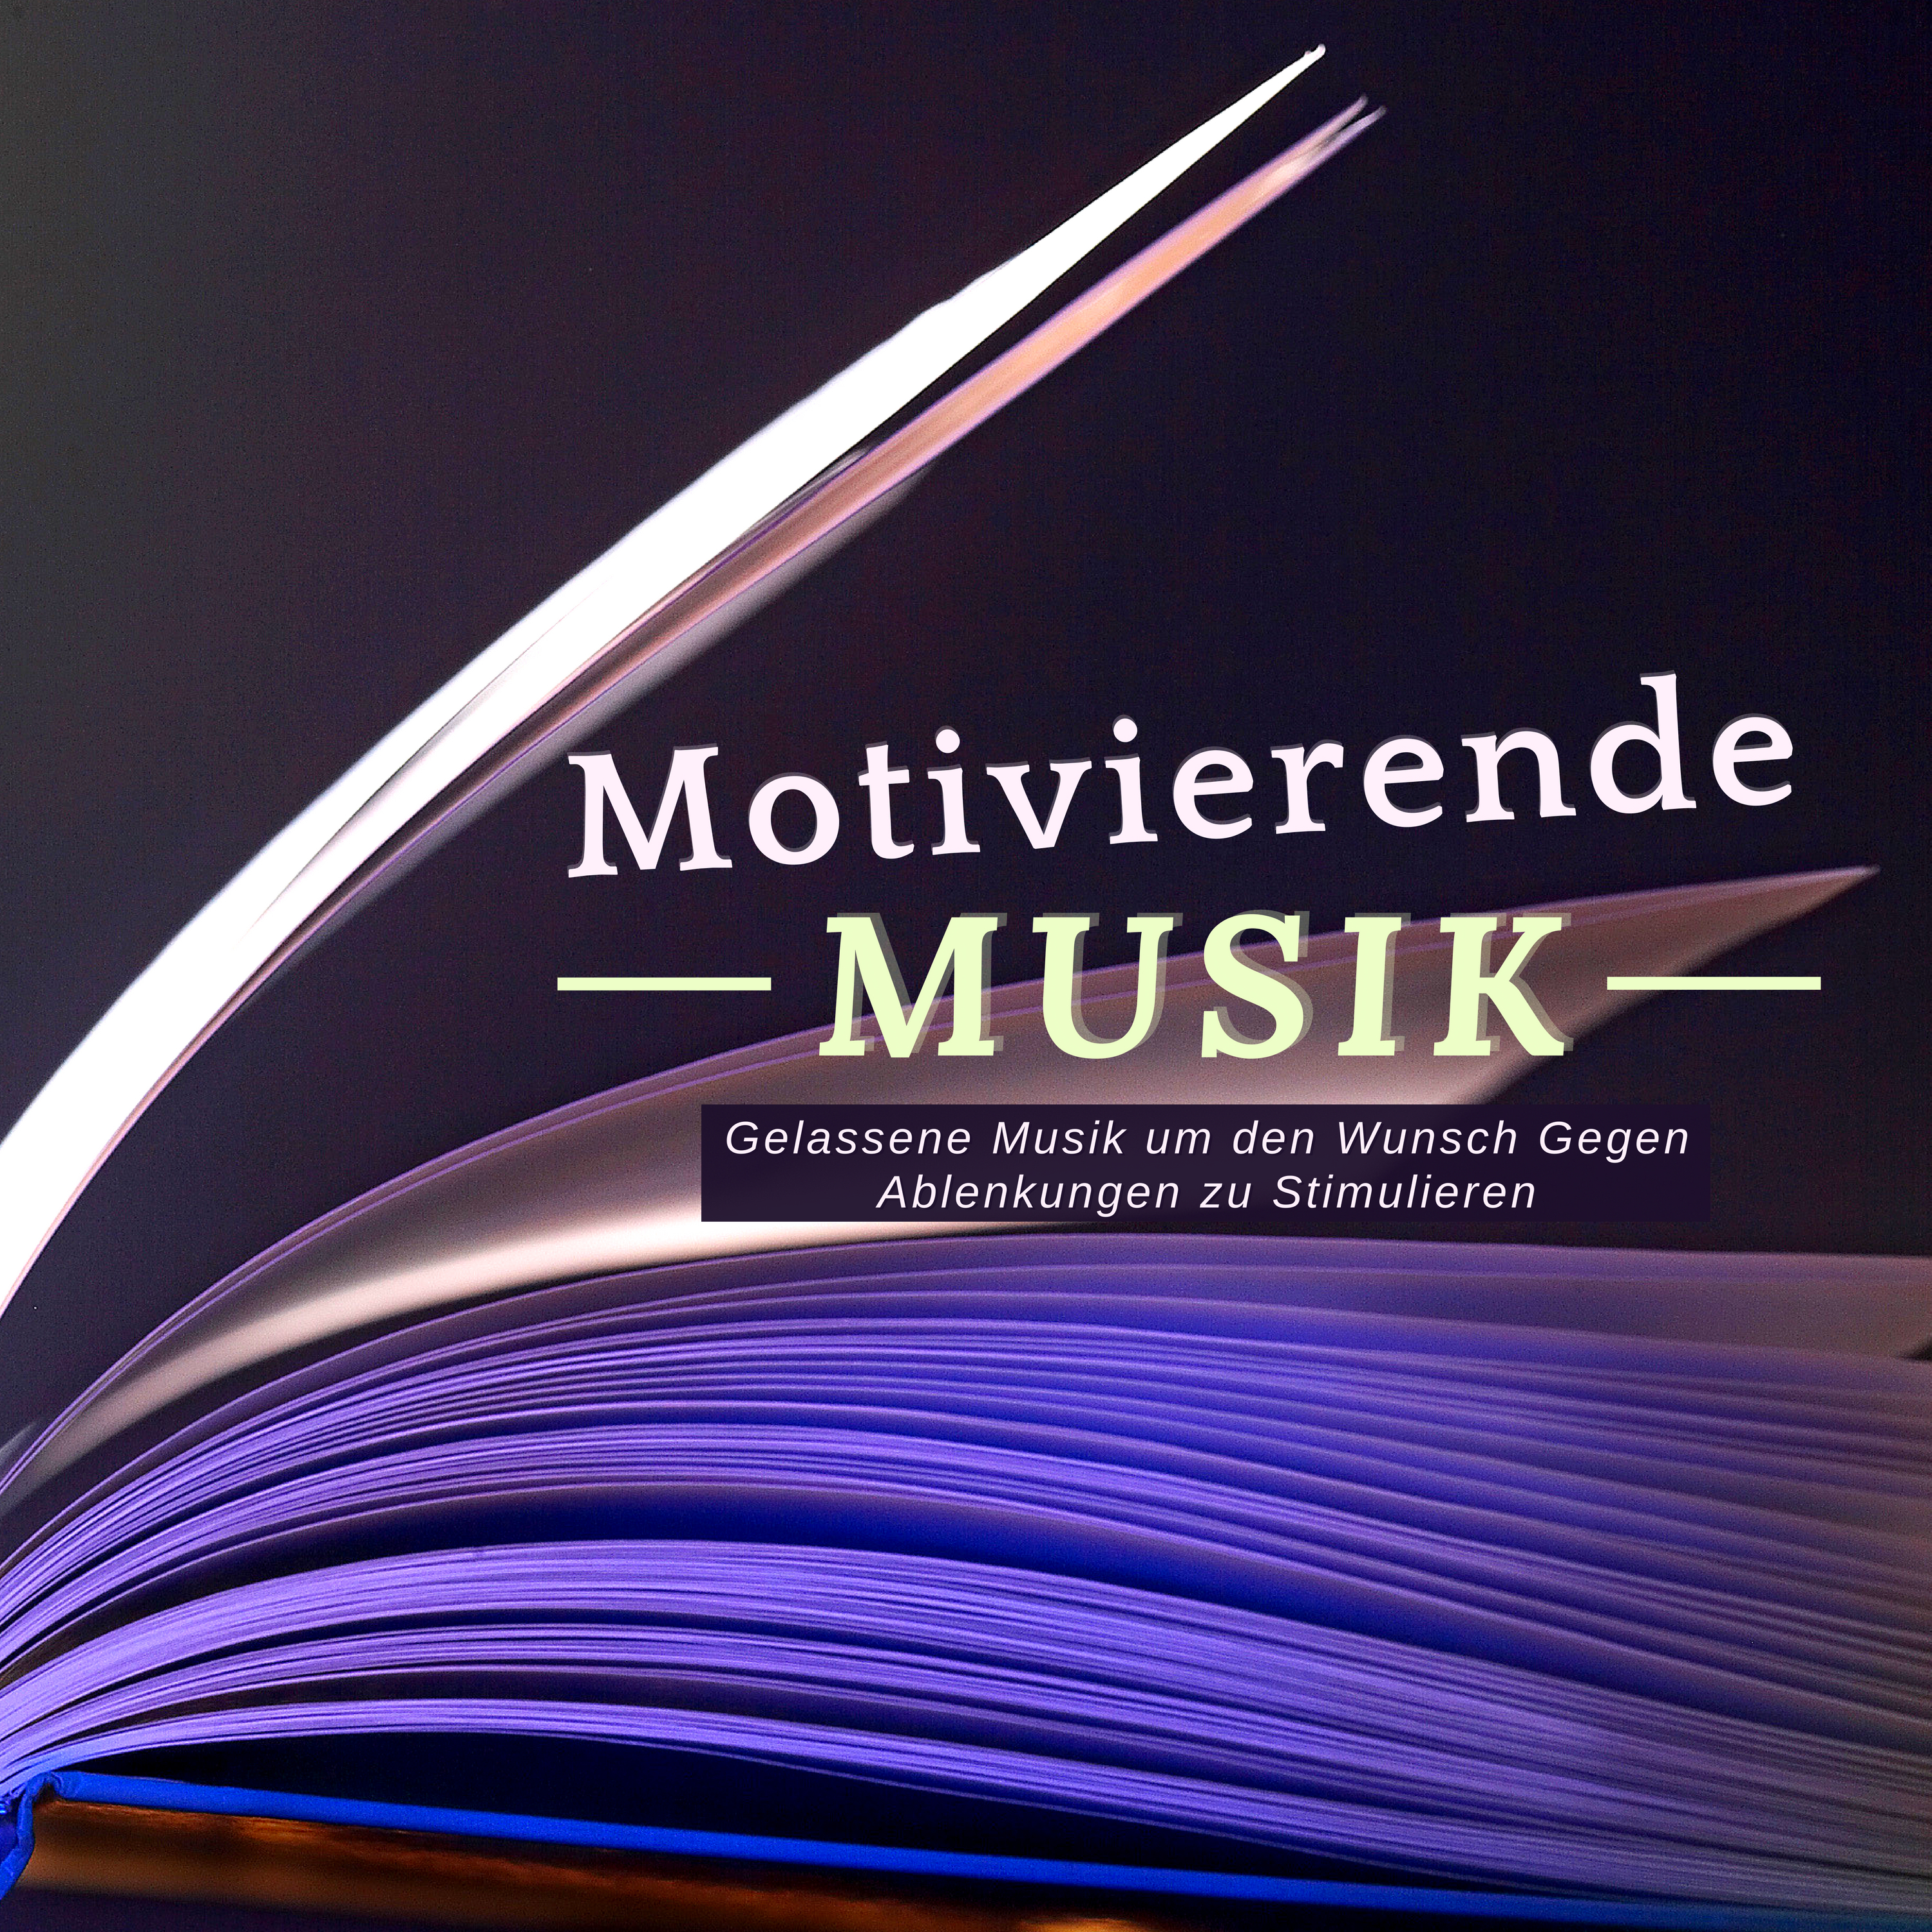 Motivierende Musik: Gelassene Musik um den Wunsch Gegen Ablenkungen zu Stimulieren